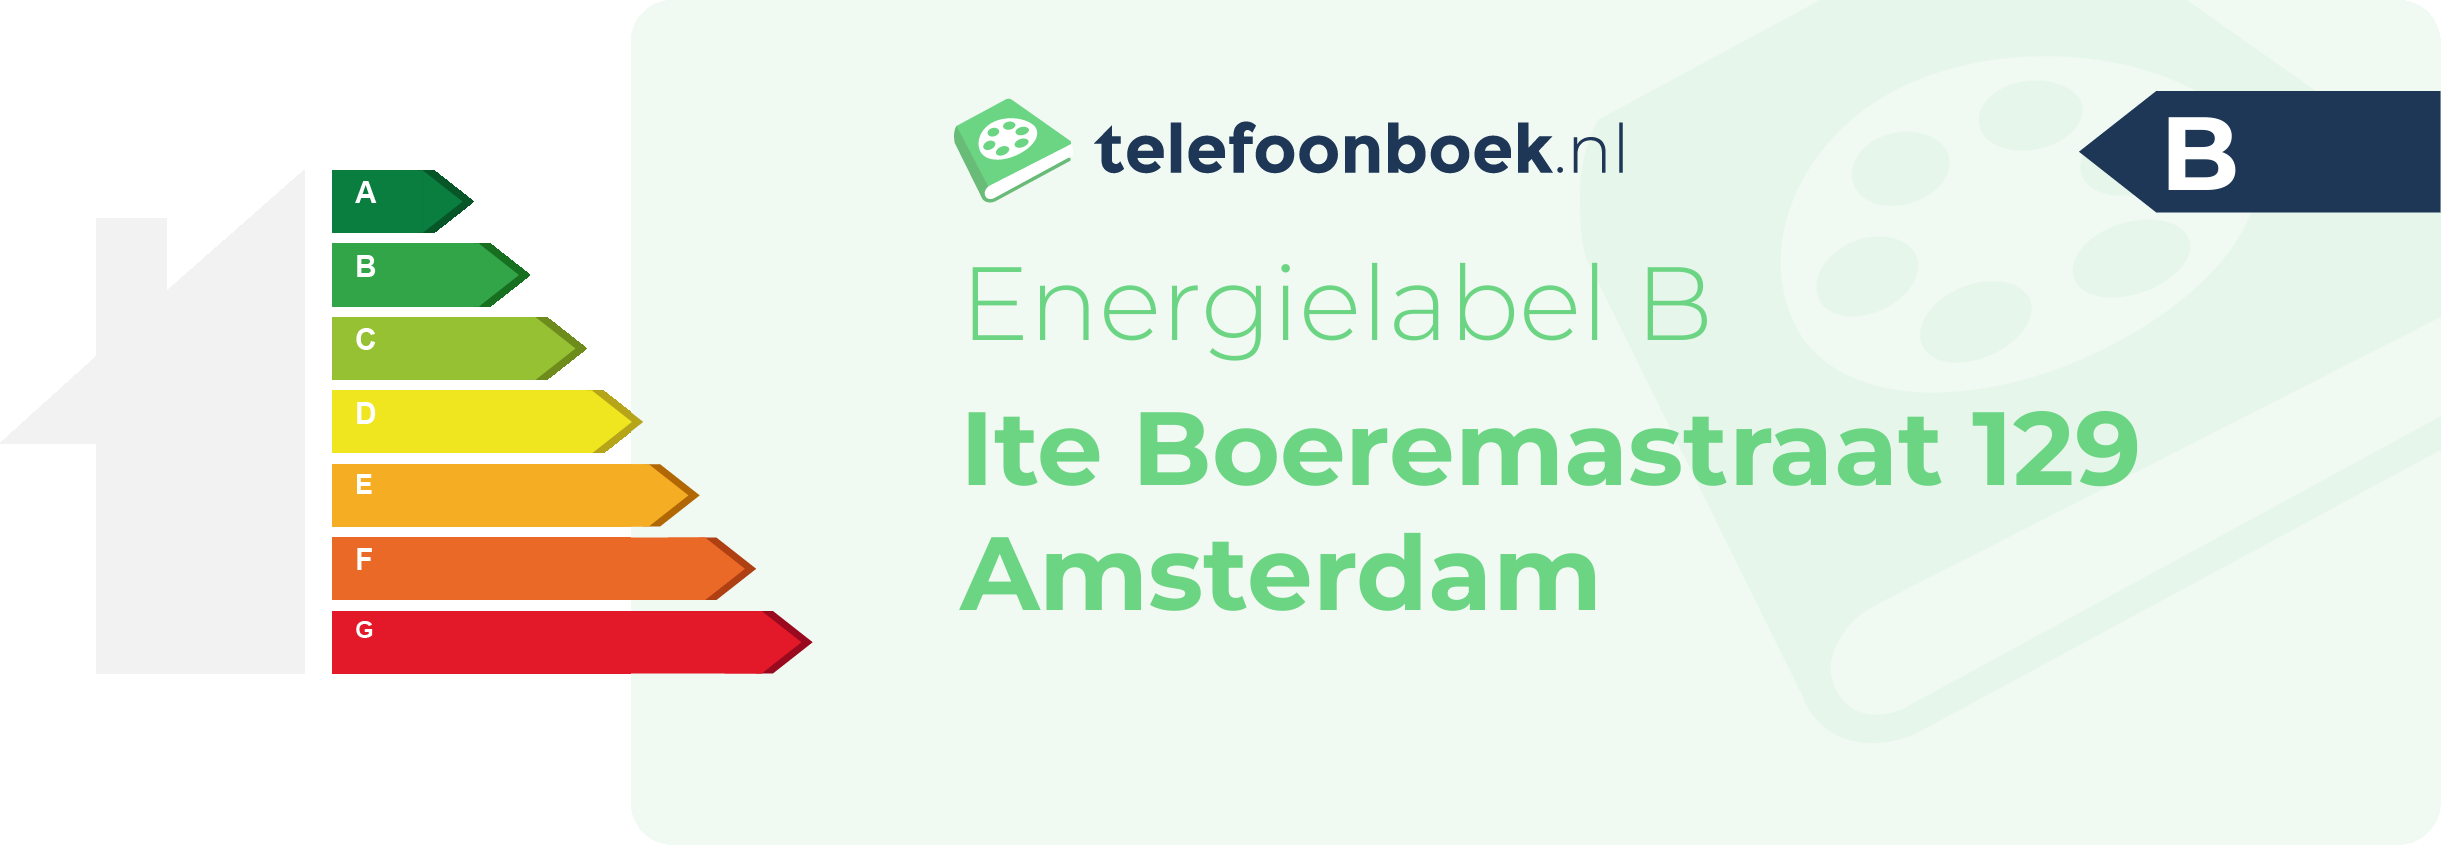 Energielabel Ite Boeremastraat 129 Amsterdam